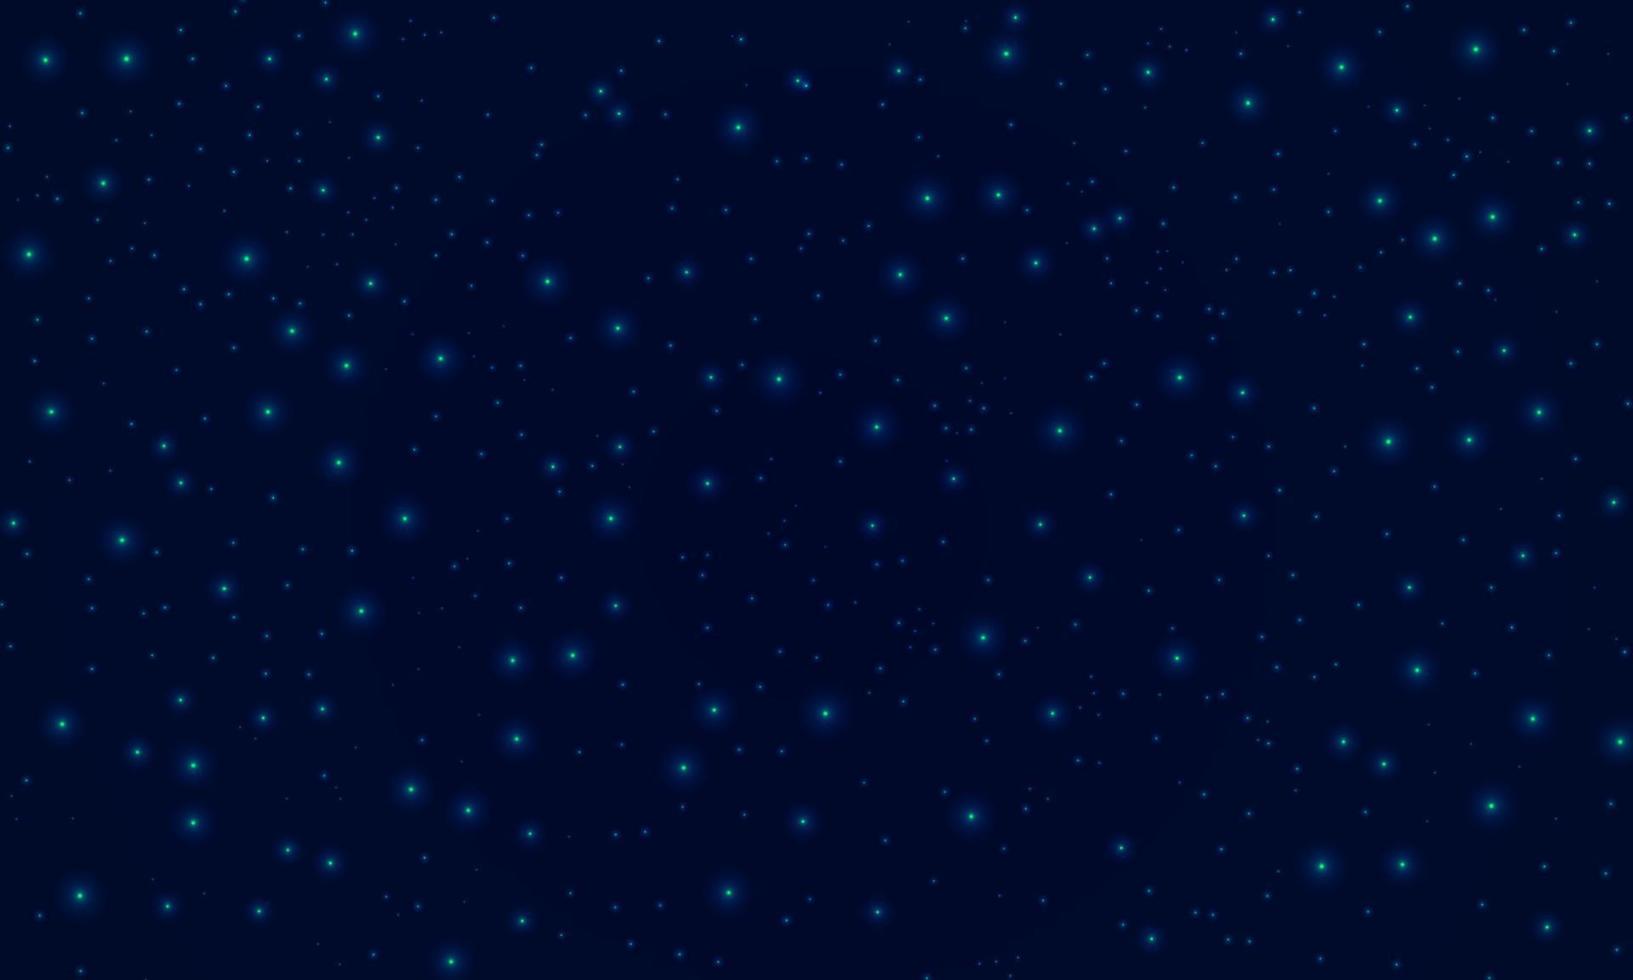 bakgrund mörk natt himmel med stjärnor, yttre space.design för reklam, baner. stock vektor illustration.